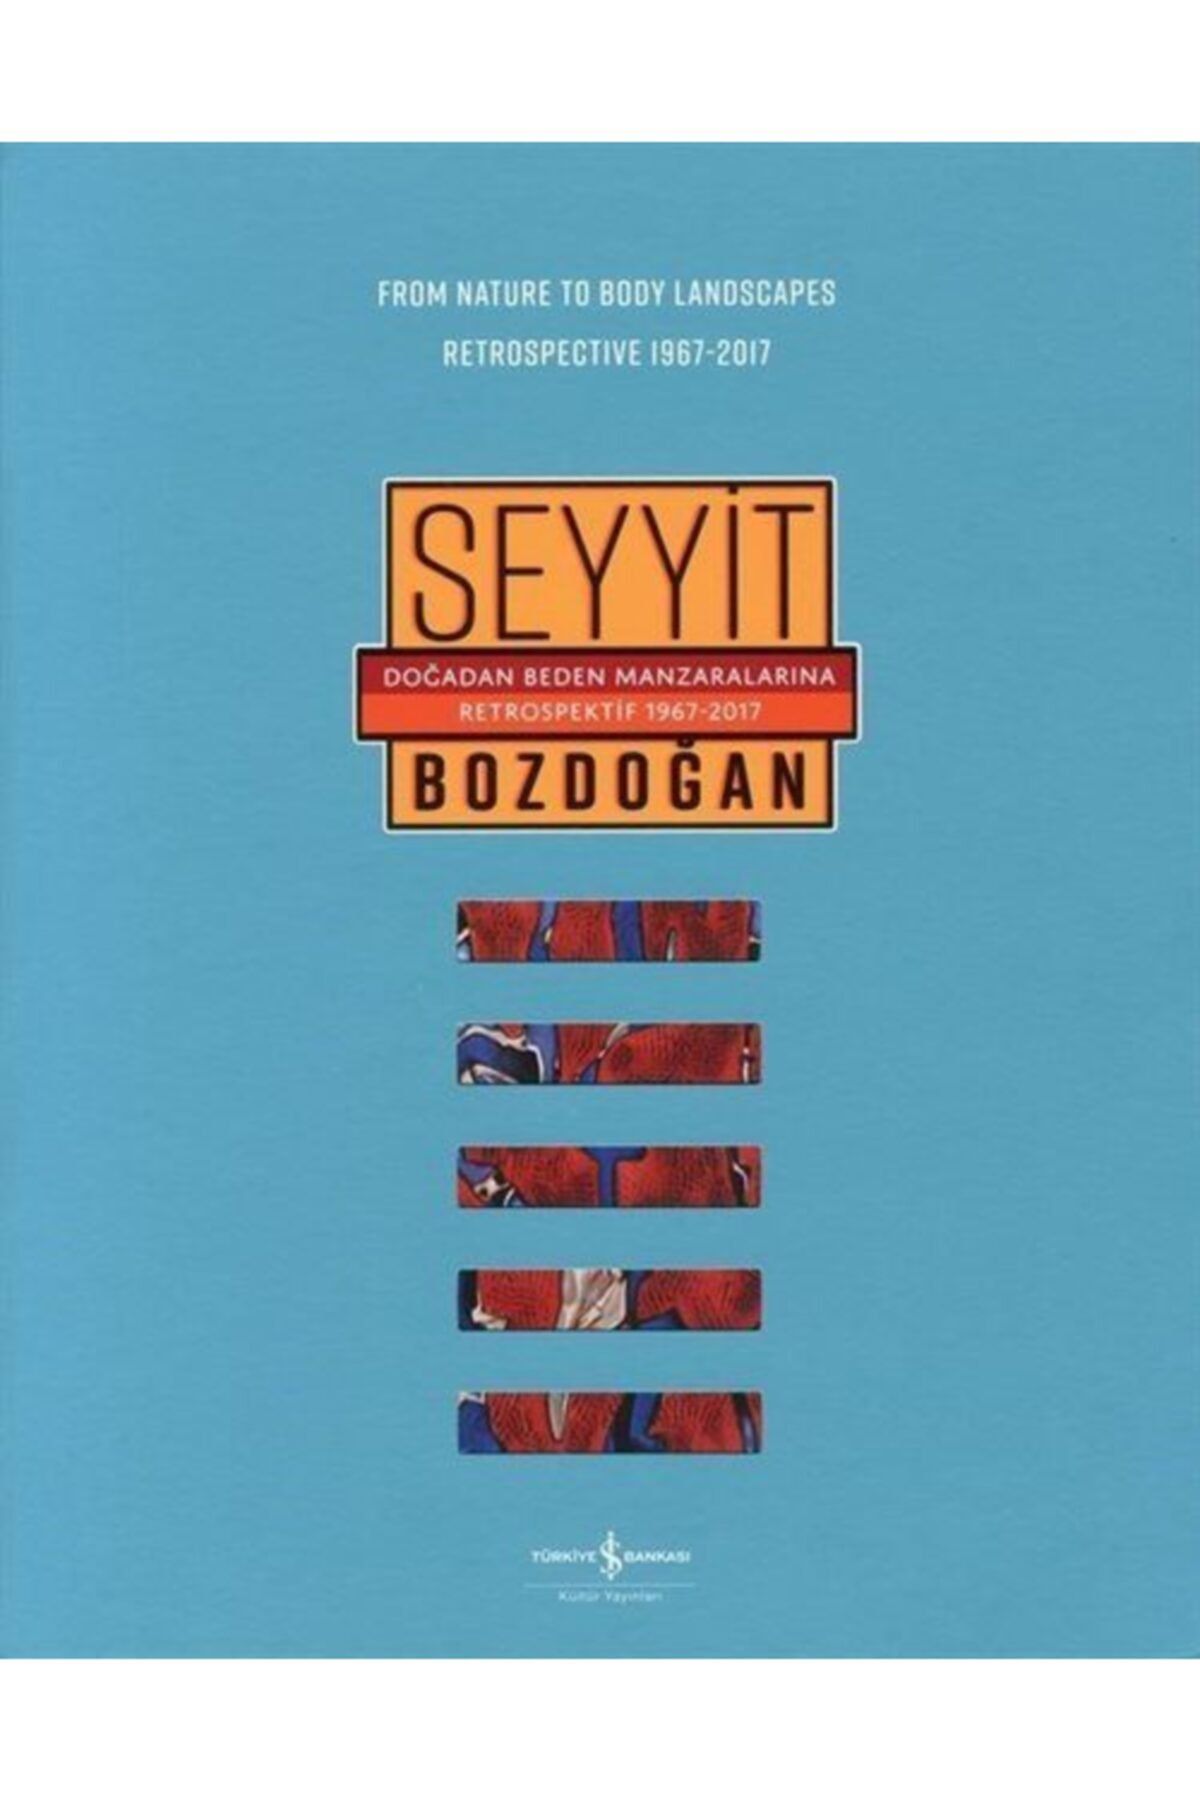 Türkiye İş Bankası Kültür Yayınları Doğadan Beden Manzaralarına Retrospektif 1967-2017